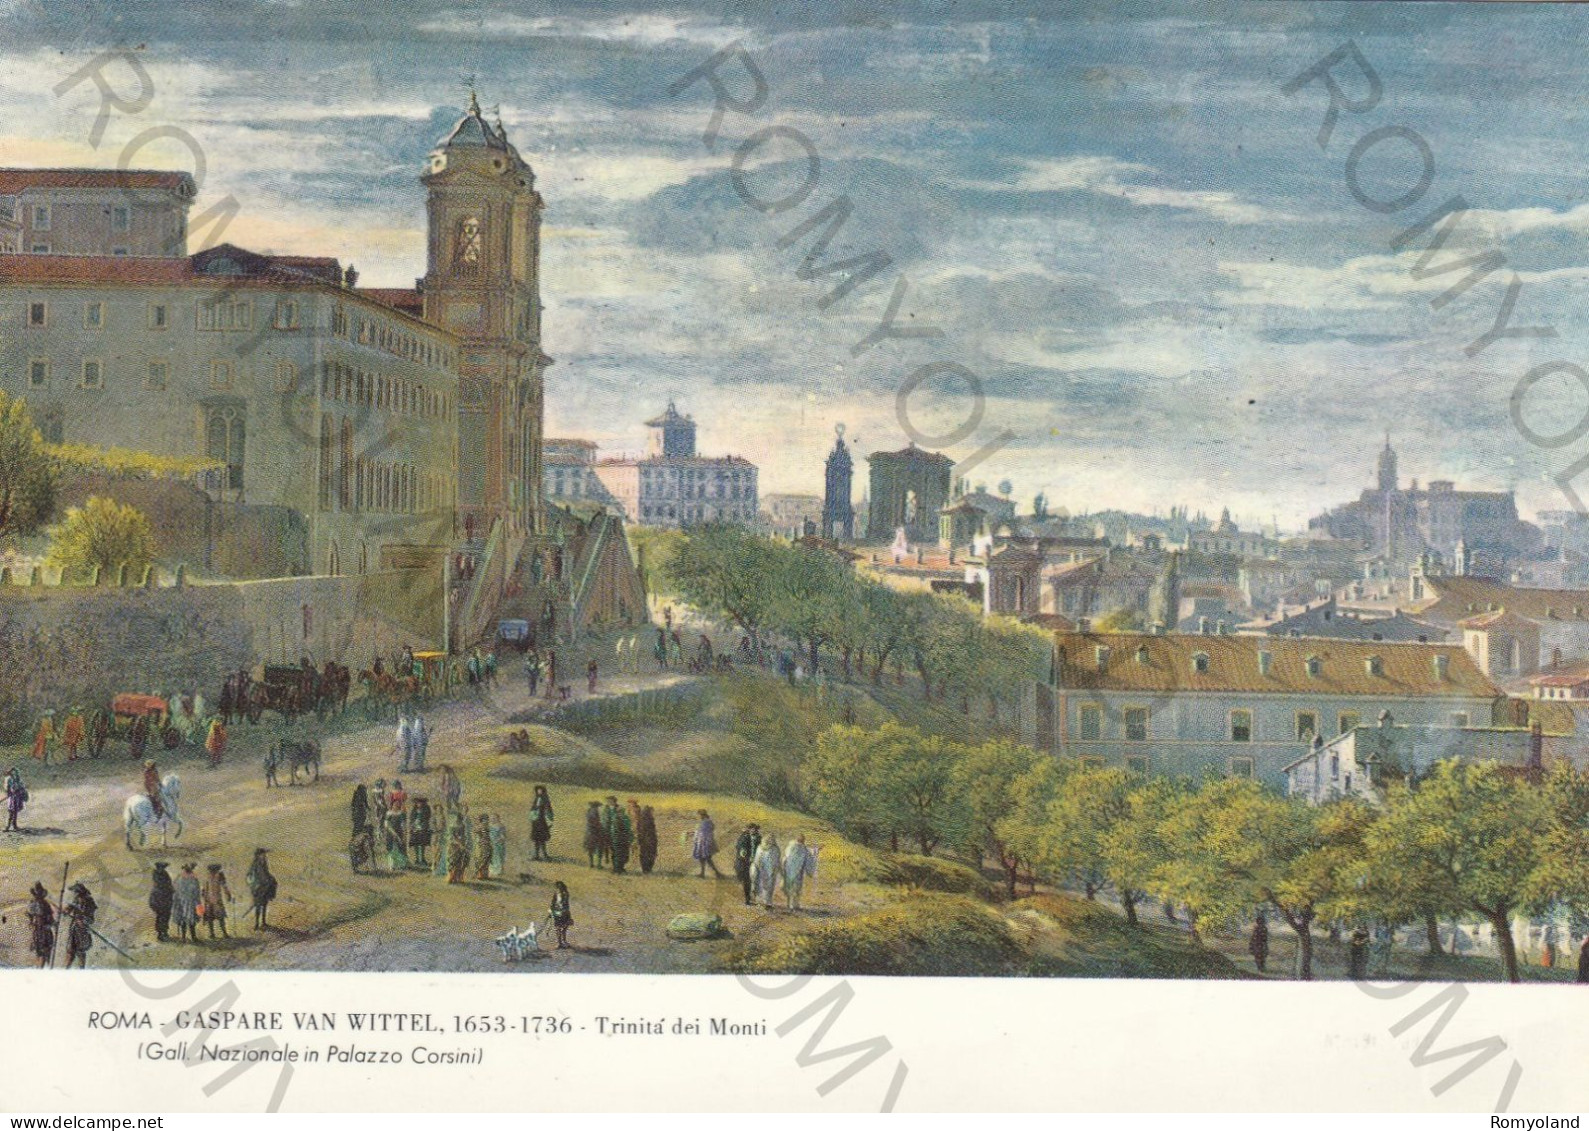 CARTOLINA  ROMA,LAZIO-GALL.NAZIONALE IN PALAZZO CORSINI-GASPARE VAN WITTEL 1653-1736 TRINITA DEI MONTI-NON VIAGGIATA - Expositions